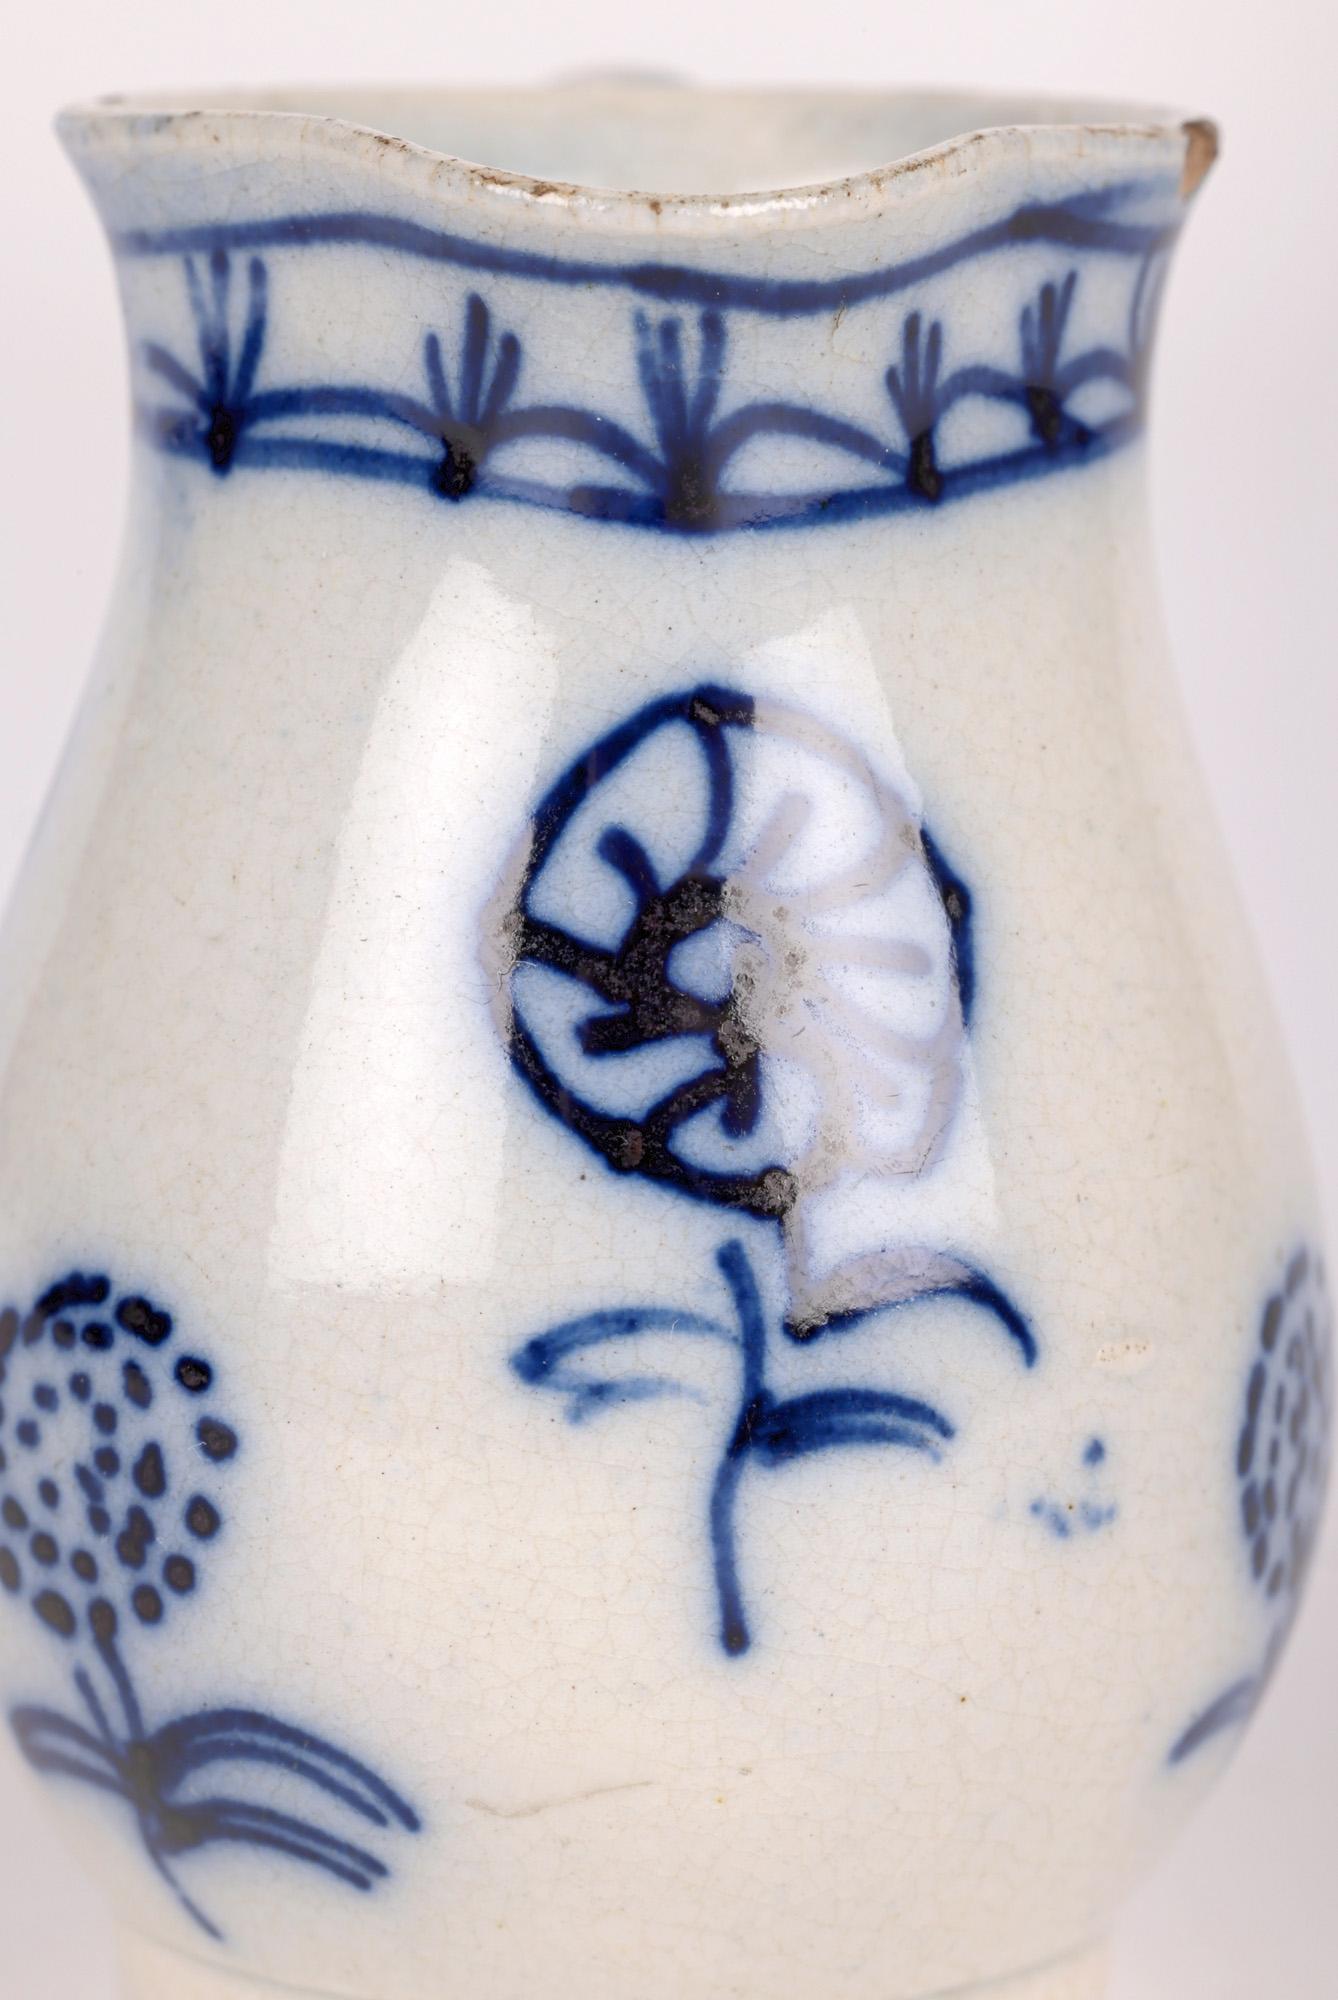 Une ravissante et rare cruche miniature anglaise pearlware peinte à la main datant de la fin du 18e siècle. La cruche de forme bulbeuse est munie d'une simple anse en forme d'oreille sur un côté et d'un large bec verseur sur le dessus. Le corps de